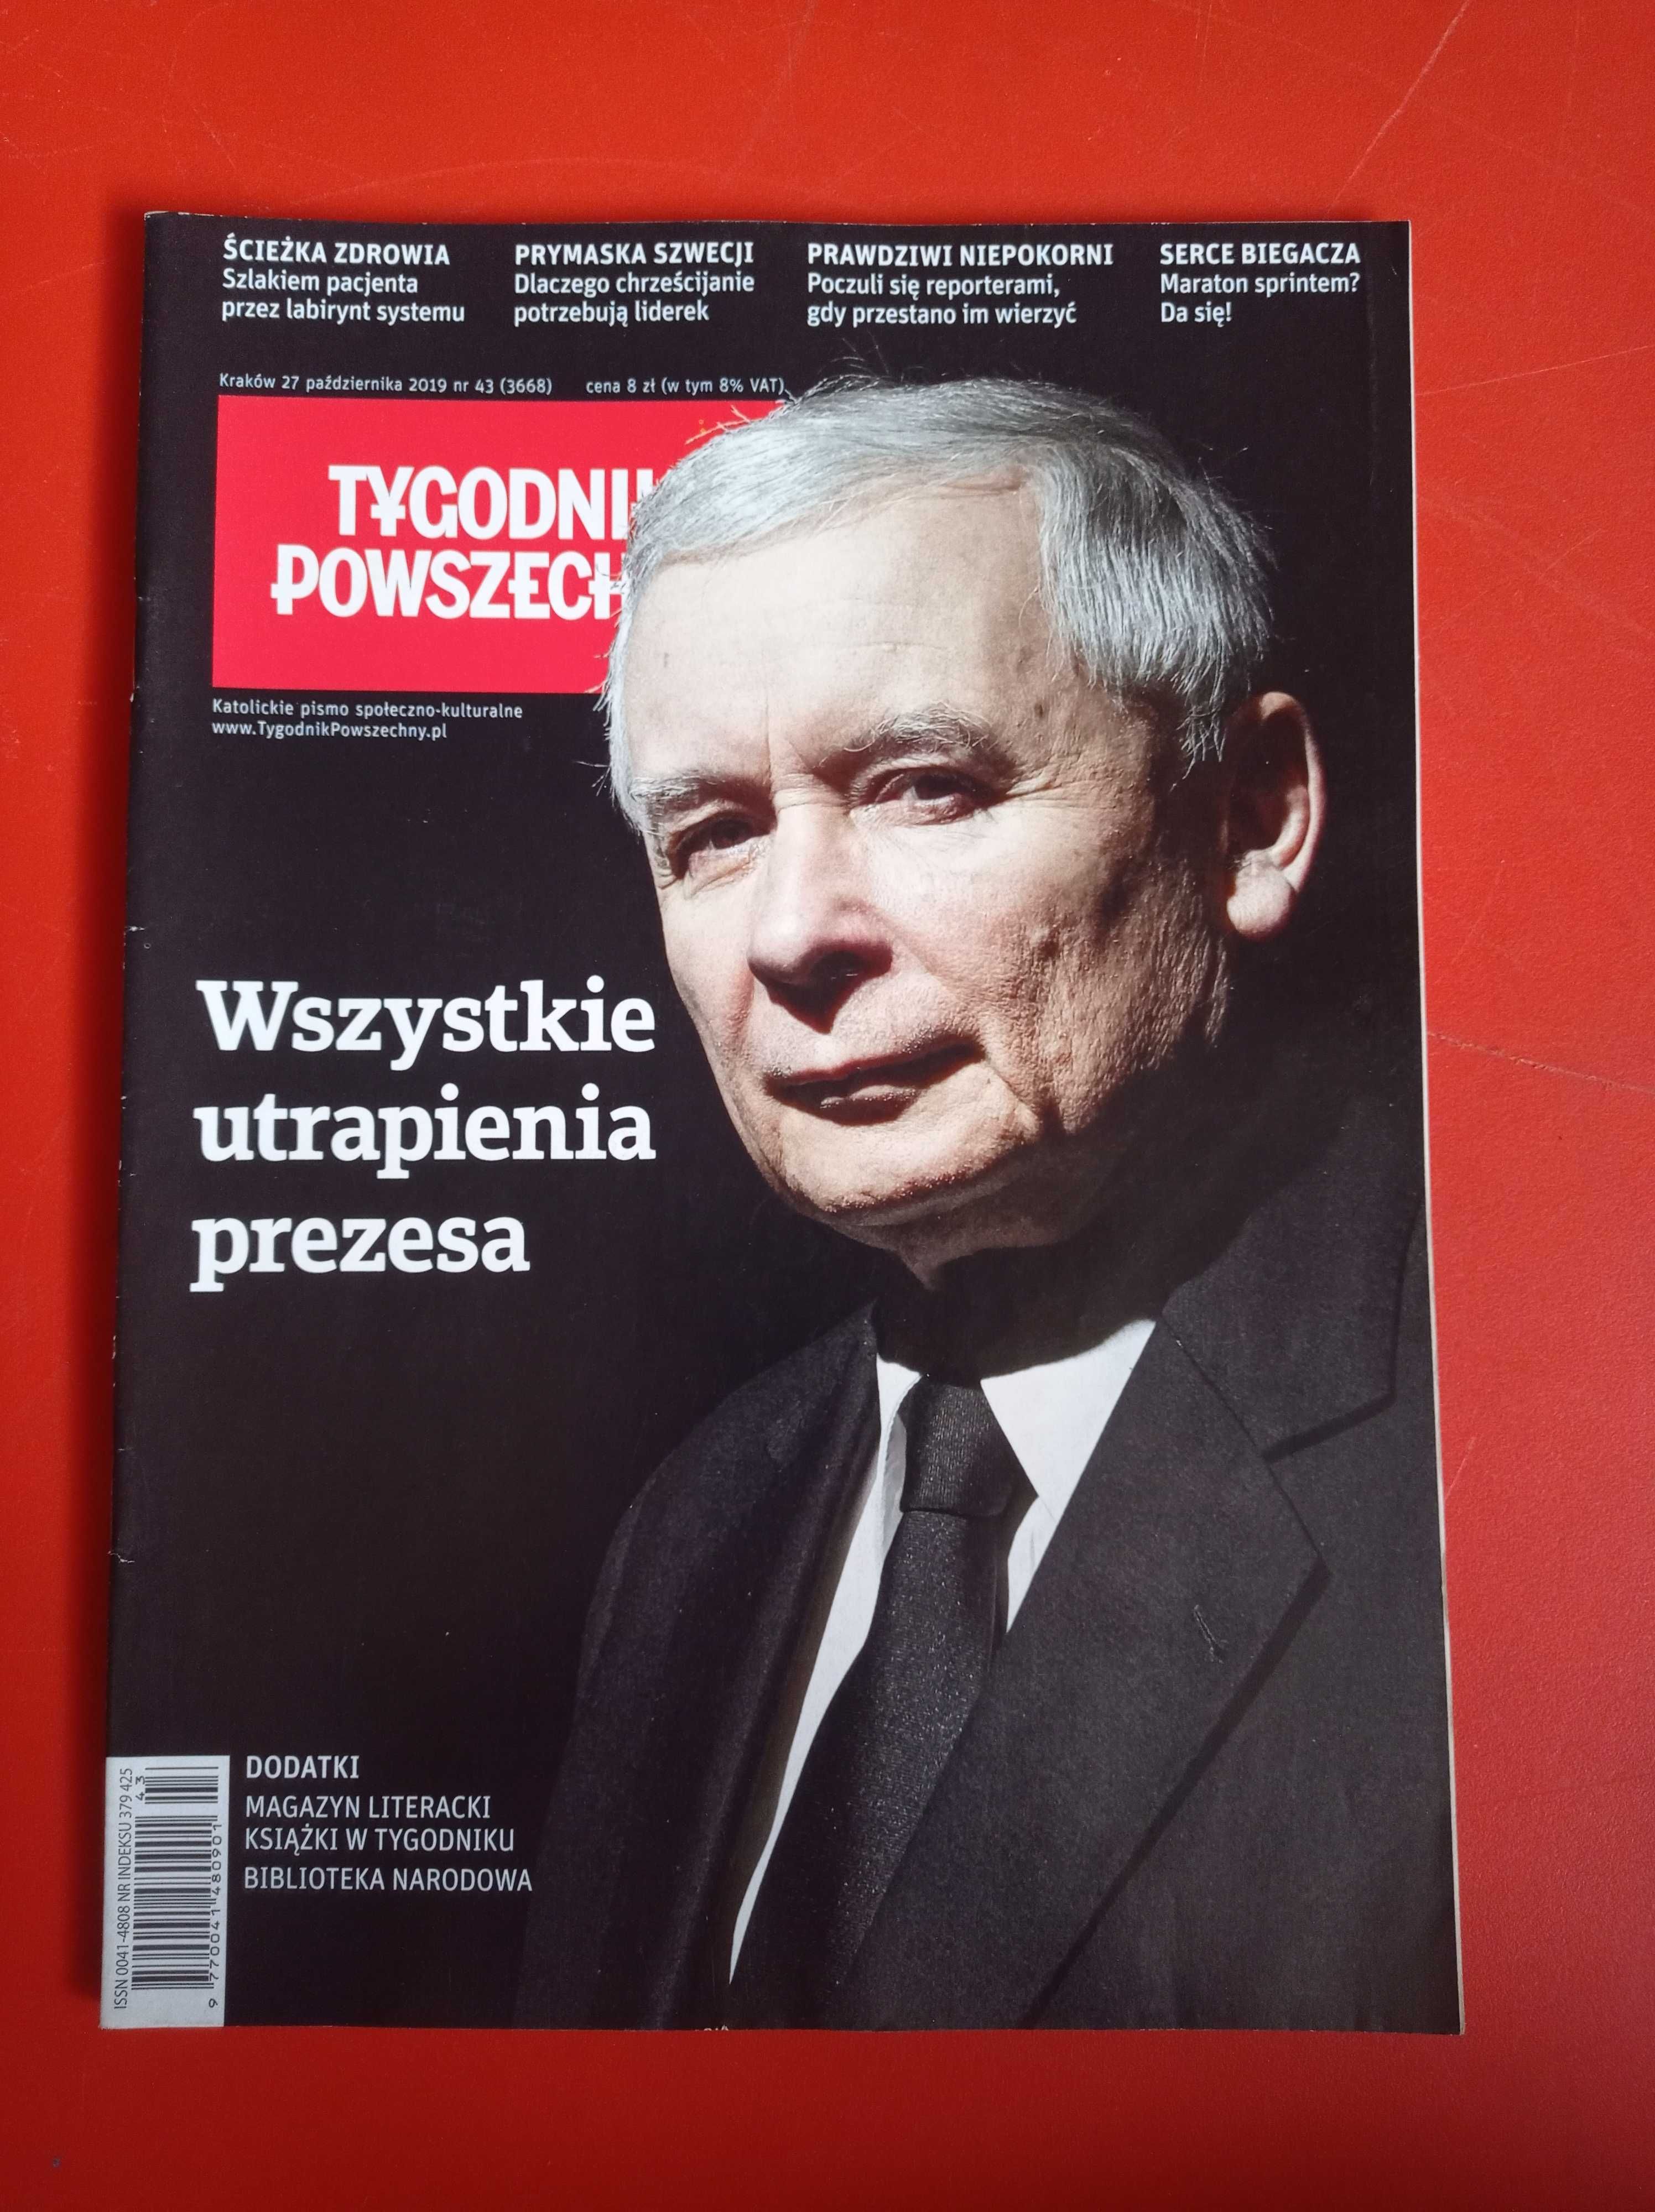 Tygodnik Powszechny nr 43 / 2019, 27 października 2019